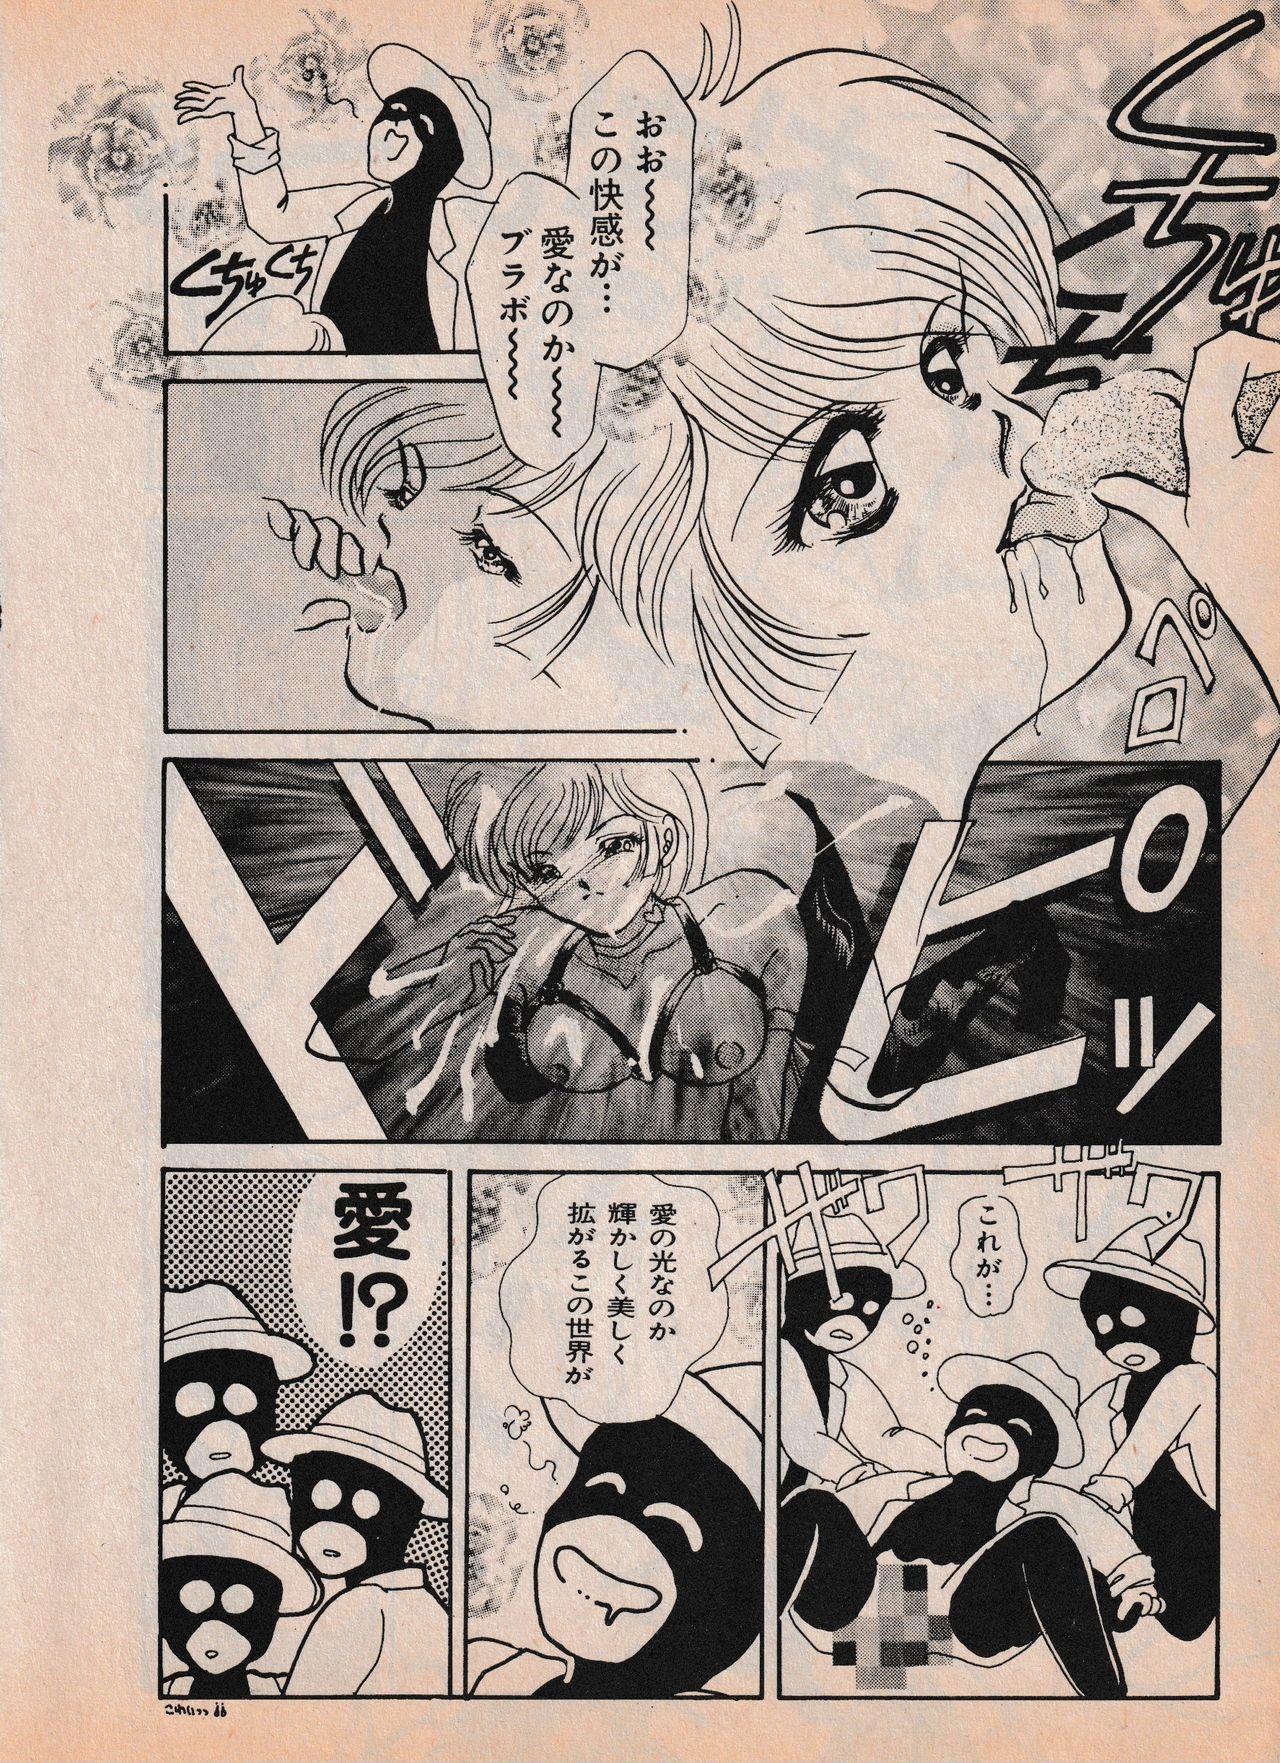 Sailor X vol. 4 - Sailor X vs. Cunty Horny! 72